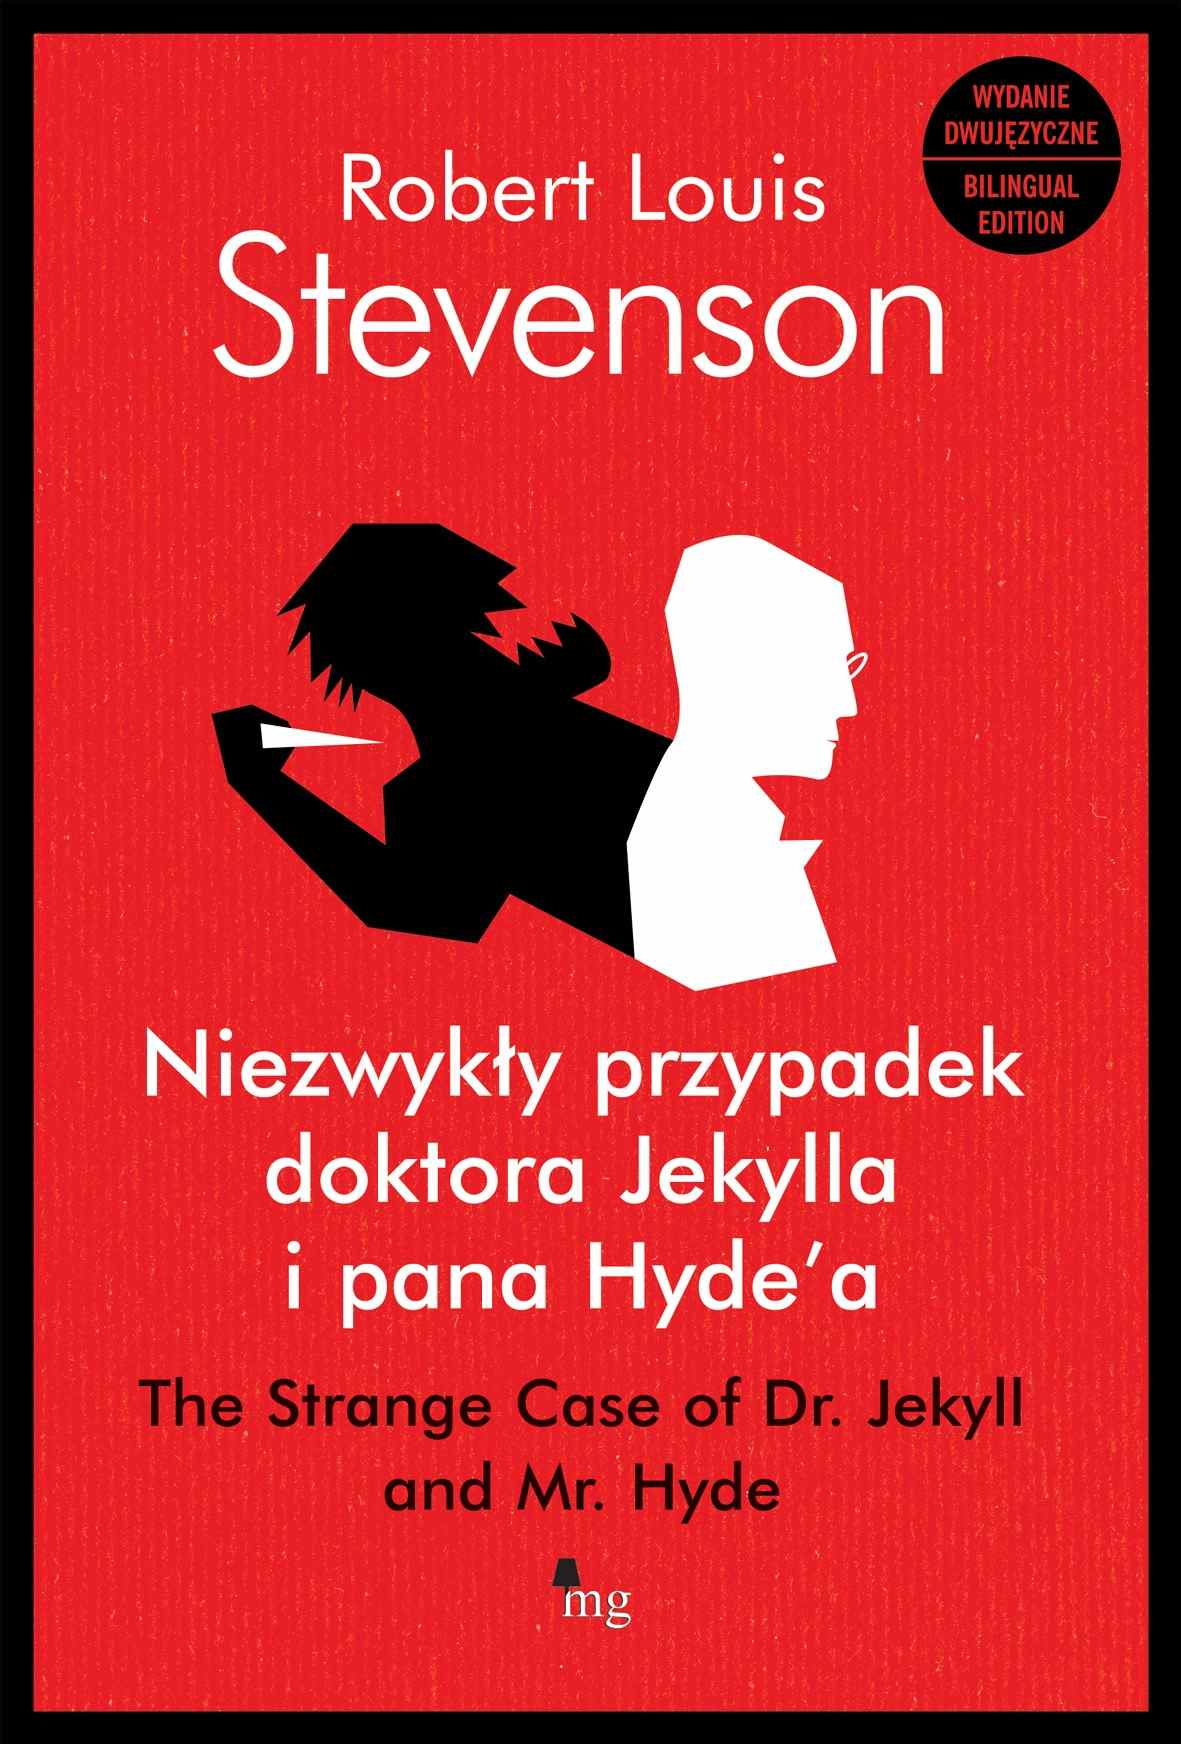 Okładka:Niezwykły przypadek doktora Jekylla i pana Hyde'a.  The Strange Case of Dr. Jekyll and Mr. Hyde - wydanie dwujęzyczne 